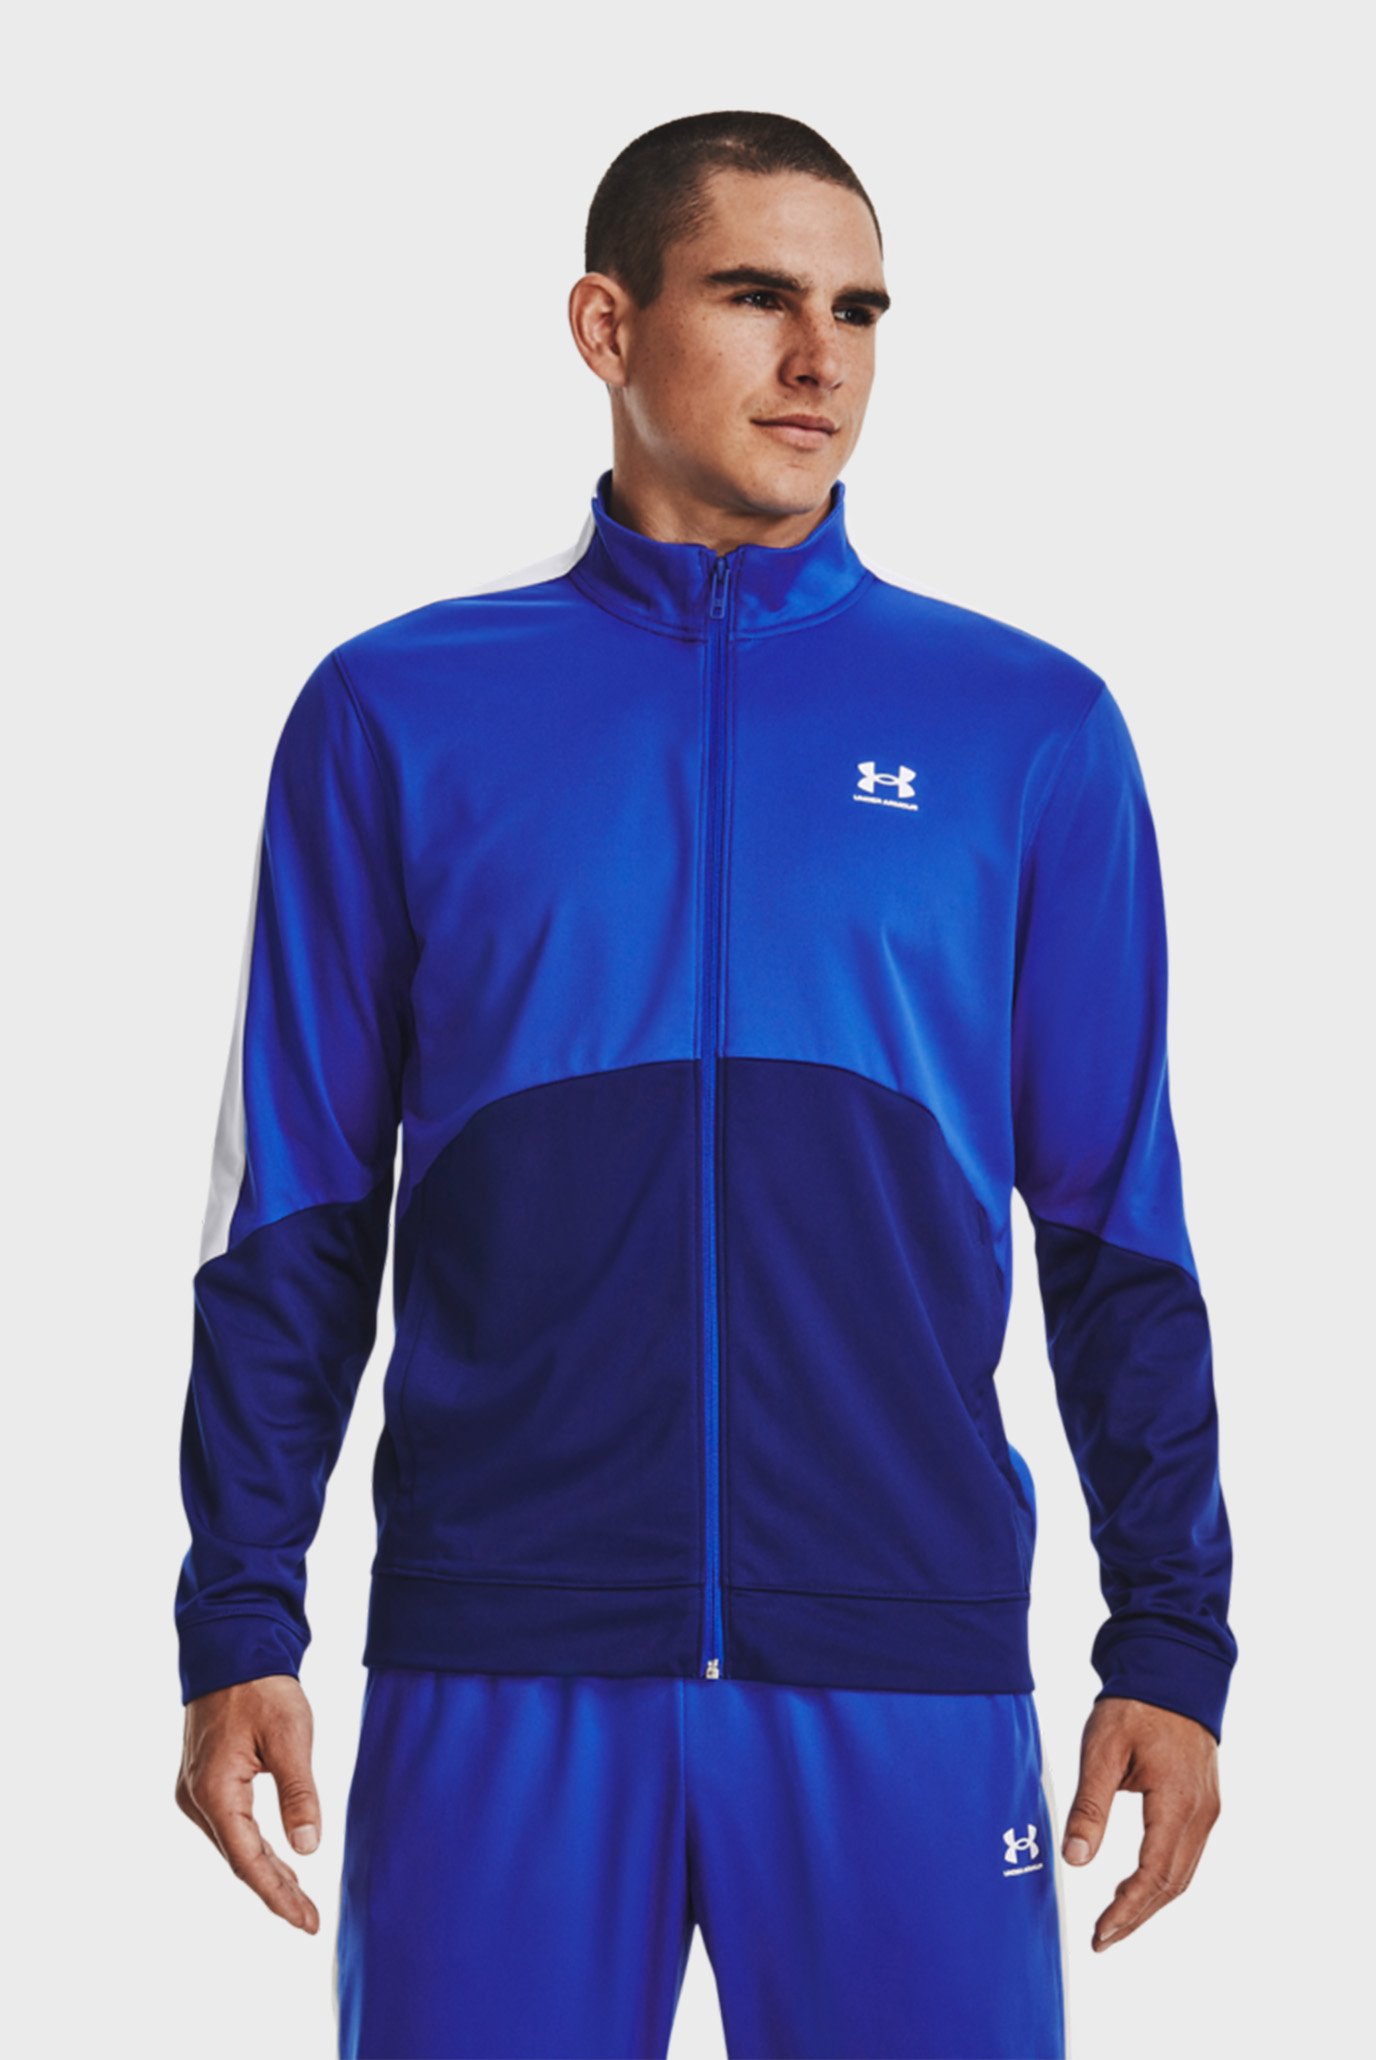 Мужская синяя спортивная кофта UA Tricot Fashion Jacket-BLU 1